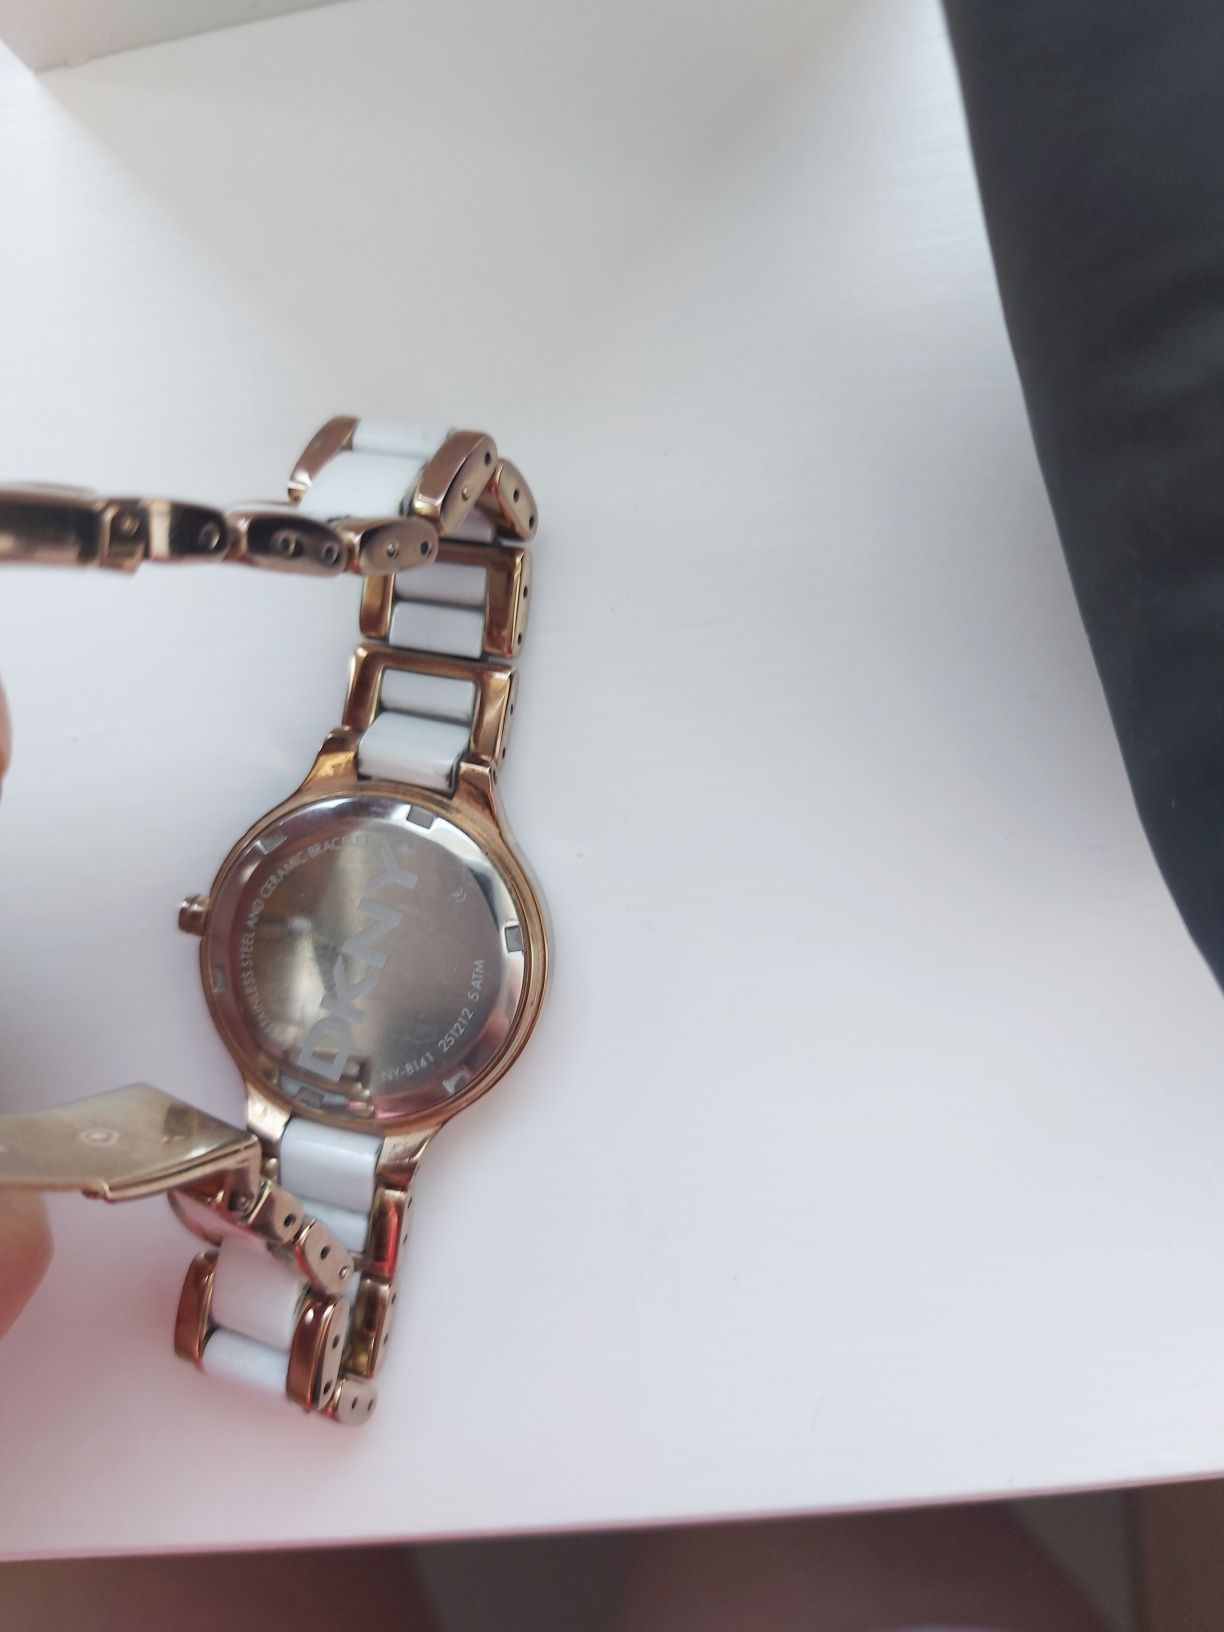 DKNY оригинален часовник В отлично състояние